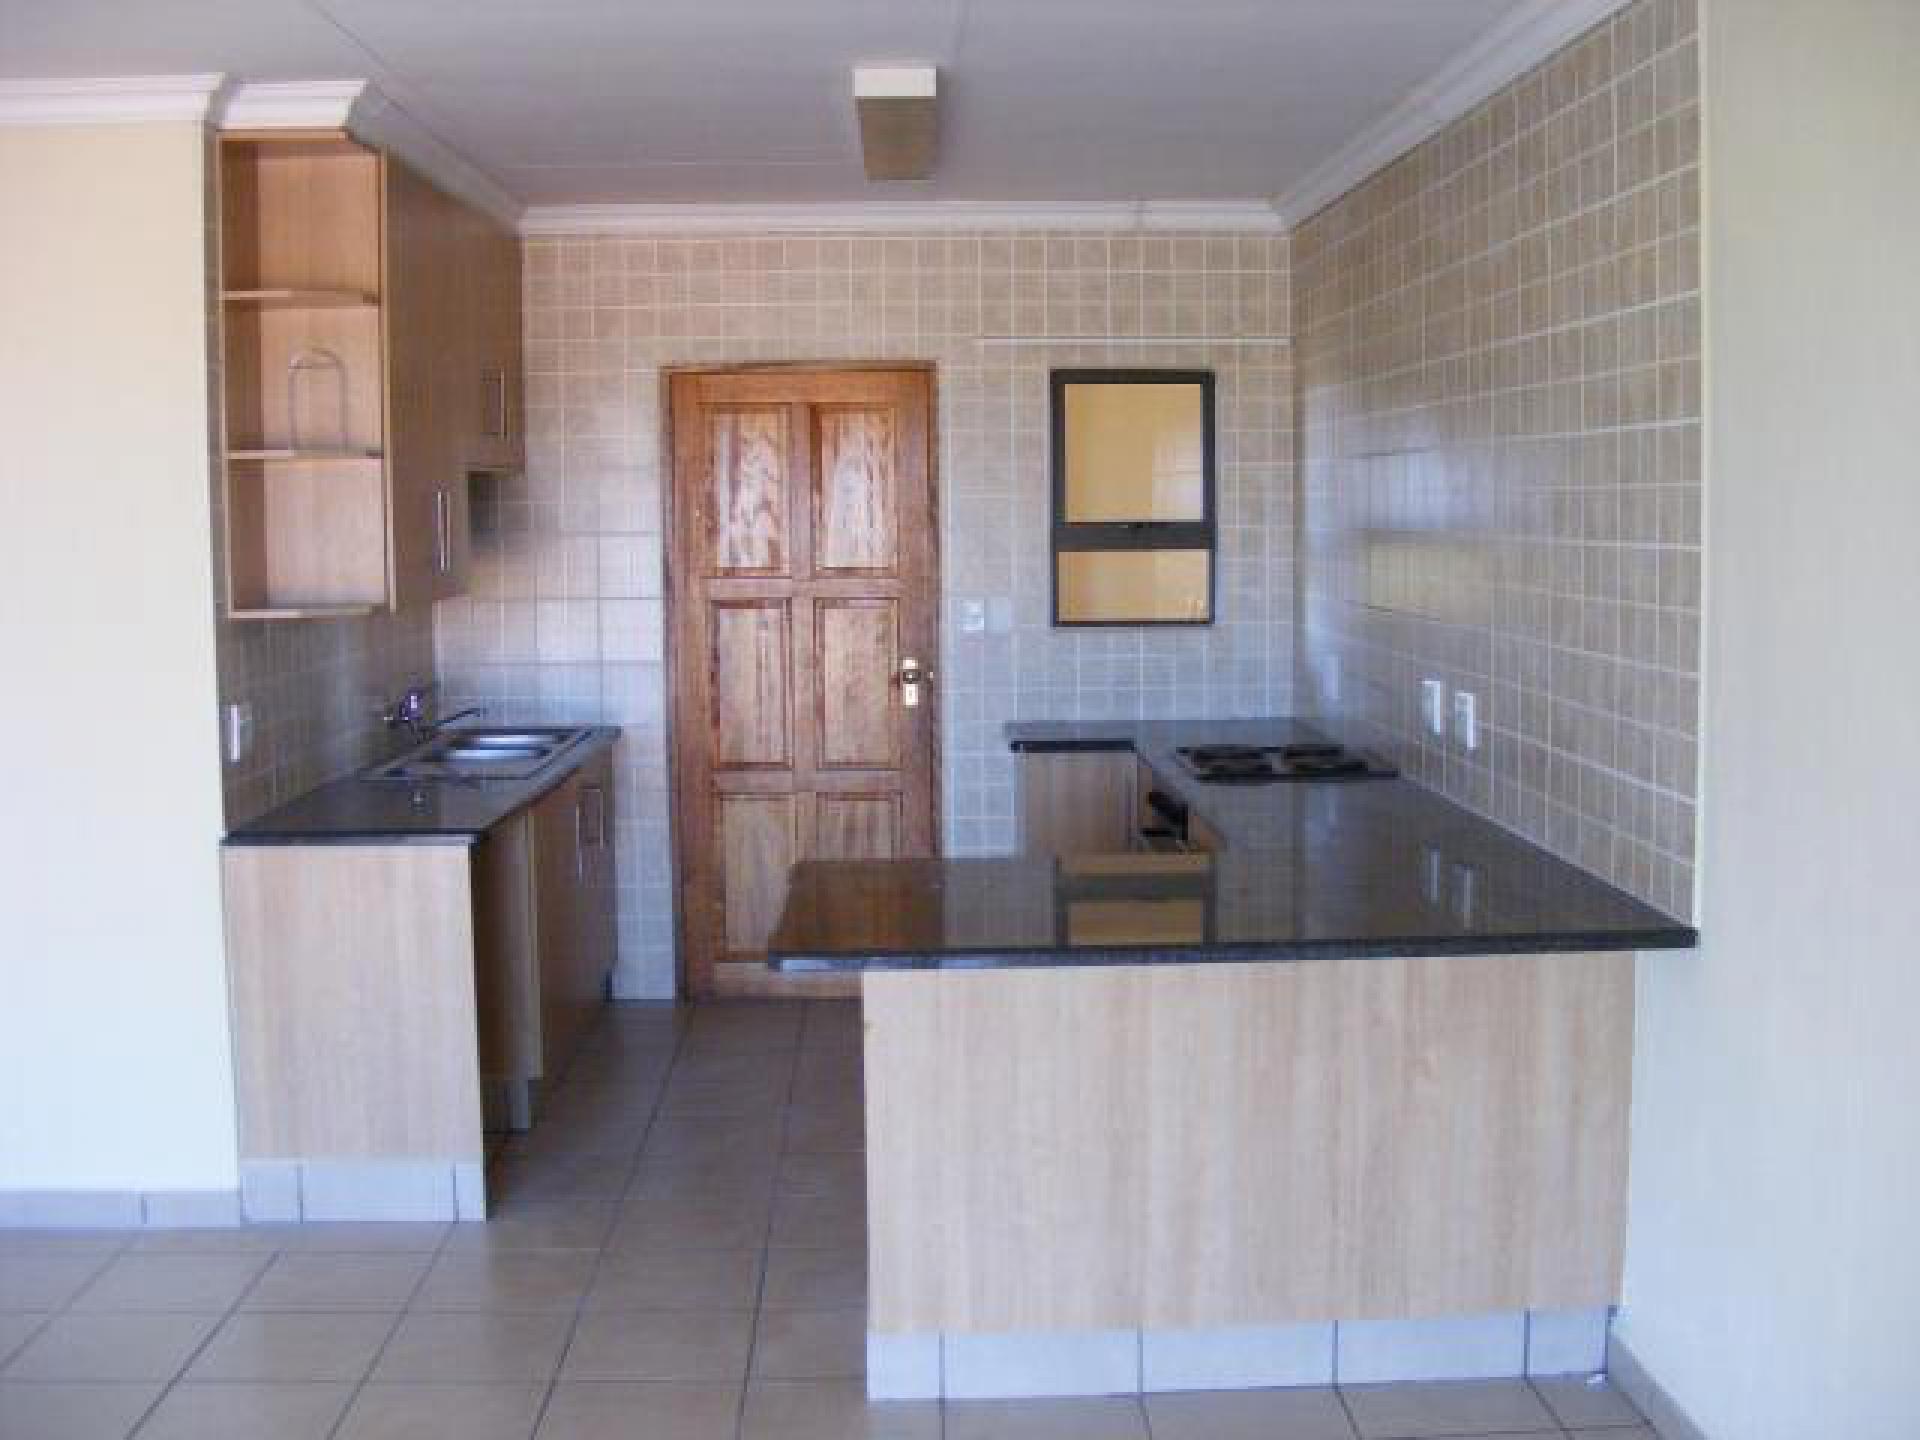 Kitchen of property in Lephalale (Ellisras)